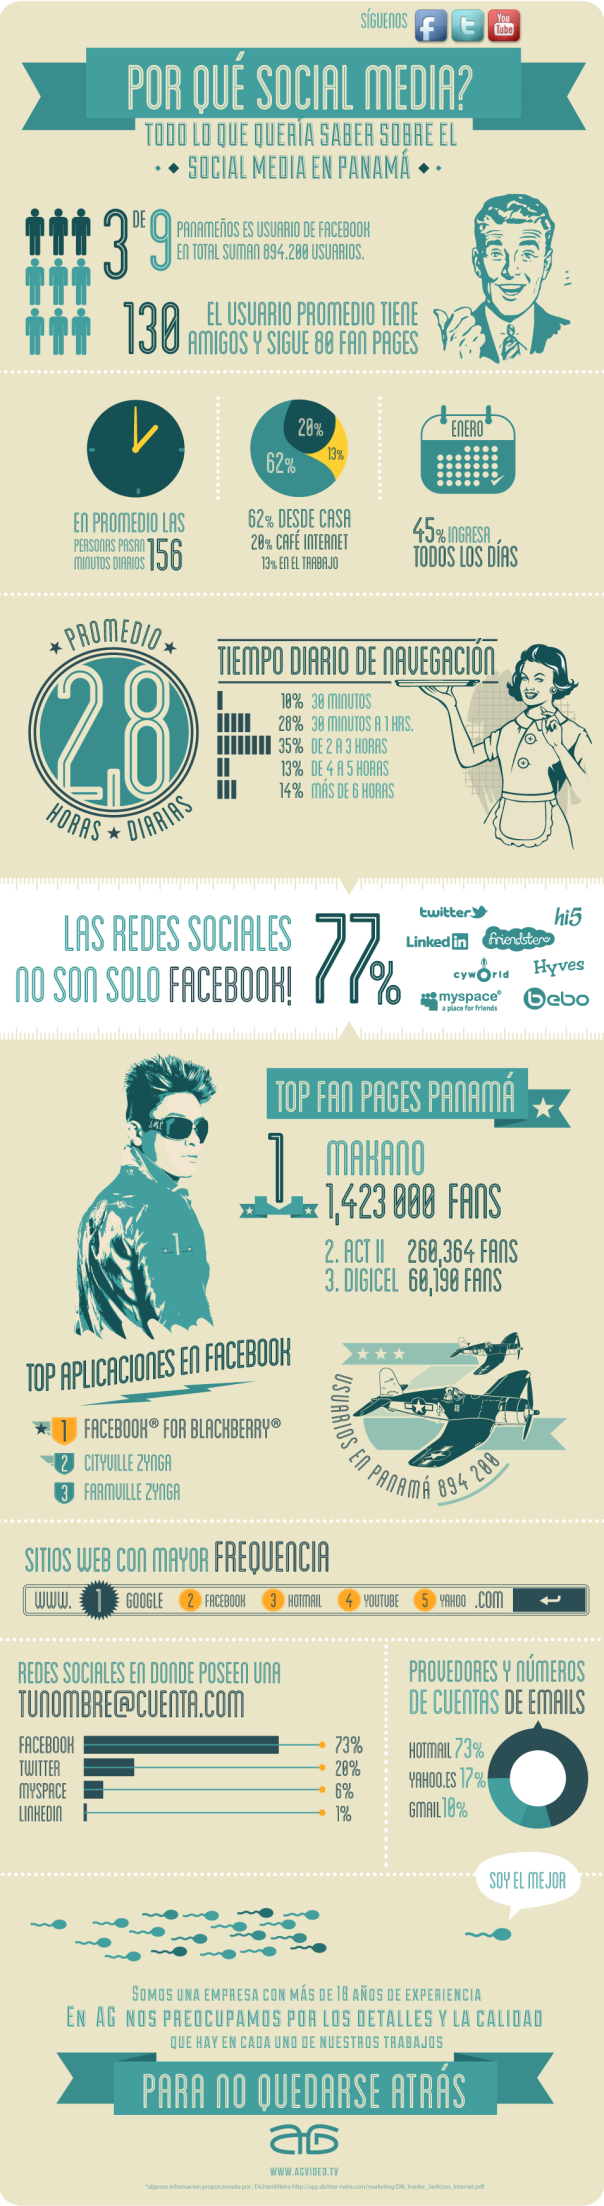 Las redes sociales en Panamá - Infografía